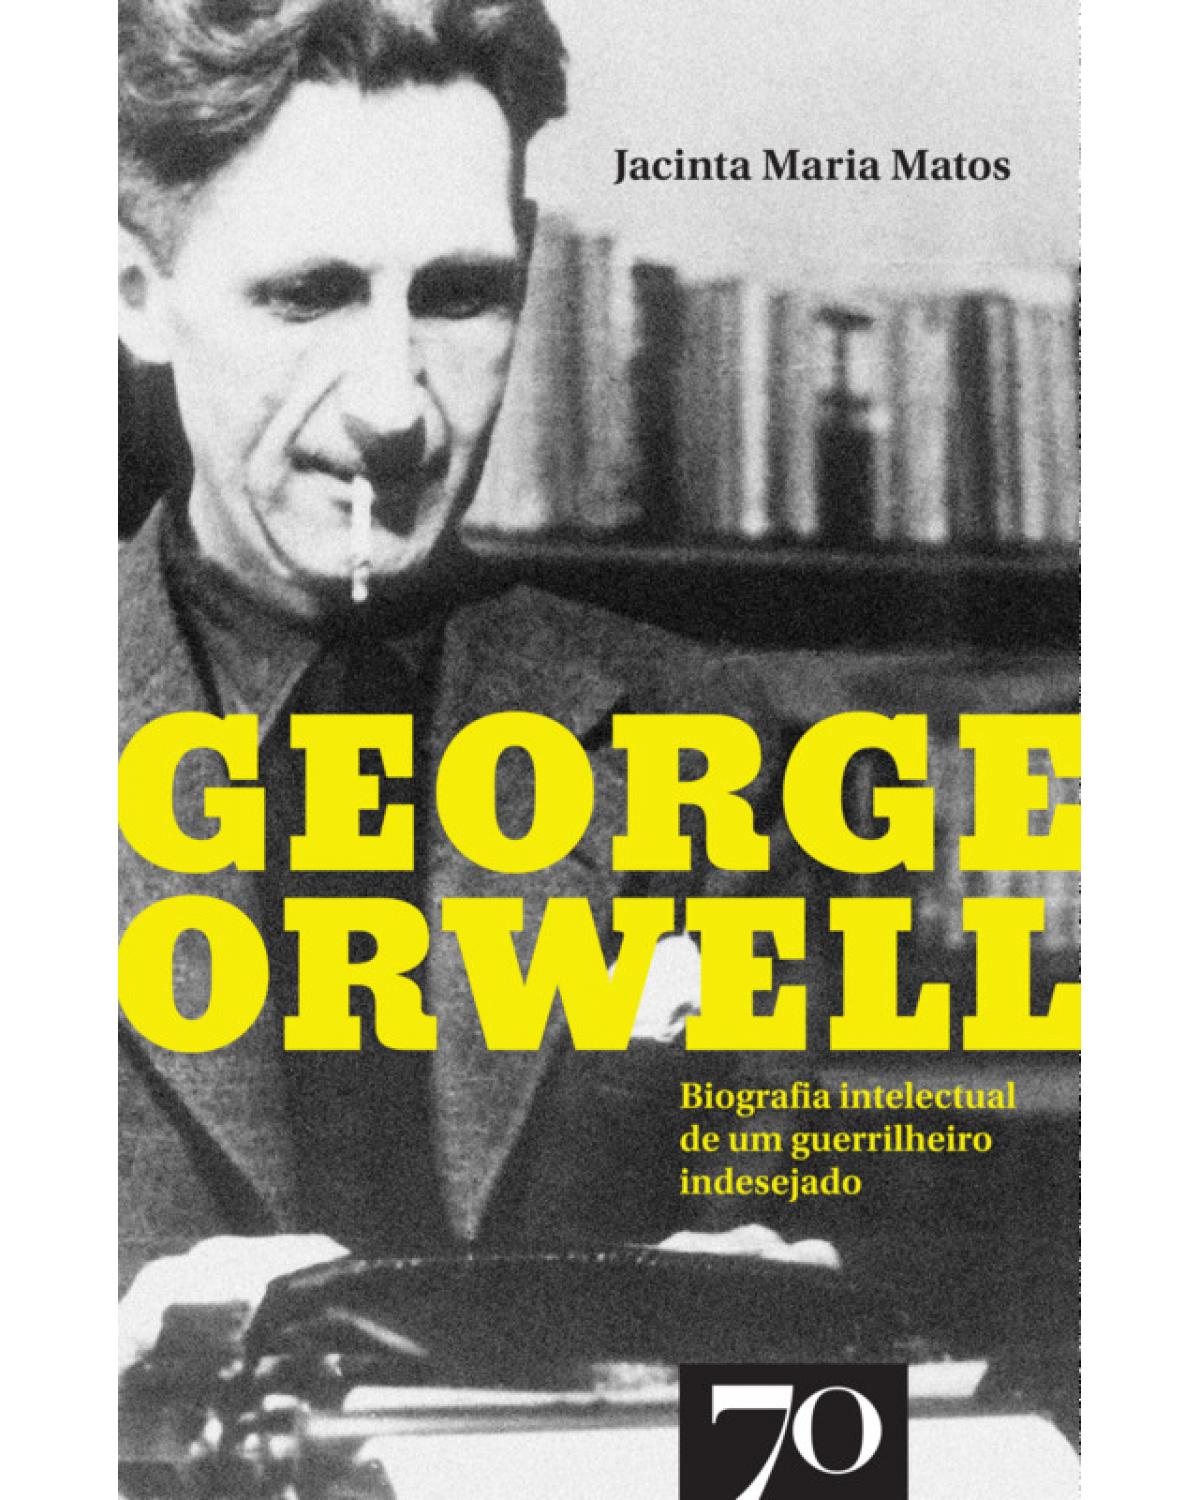 George Orwell - biografia intelectual de um guerrilheiro indesejado - 1ª Edição | 2019